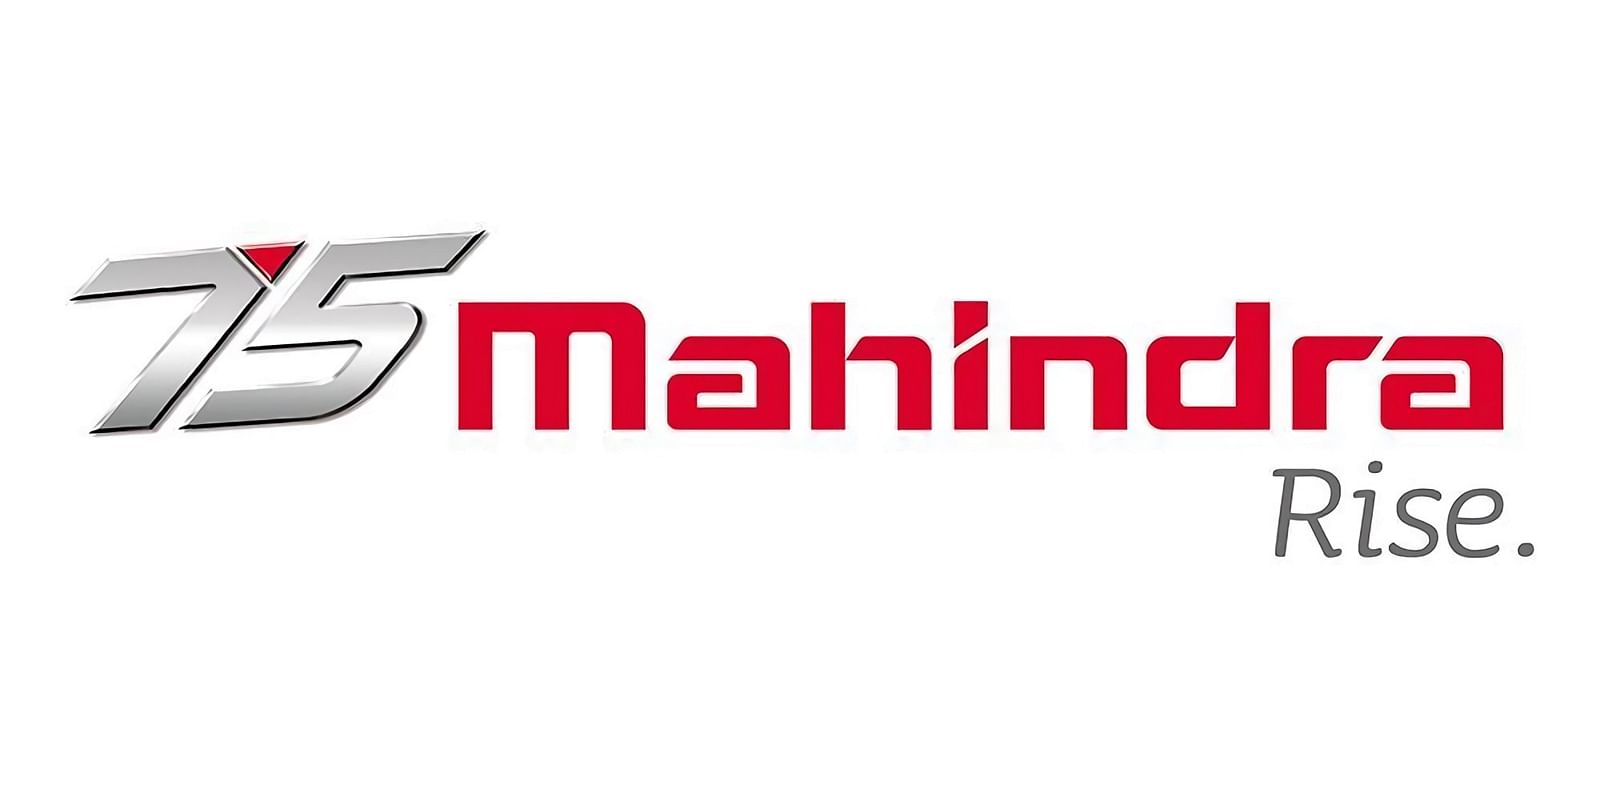 Mahindra Group (Mahindra & Mahindra Ltd.)